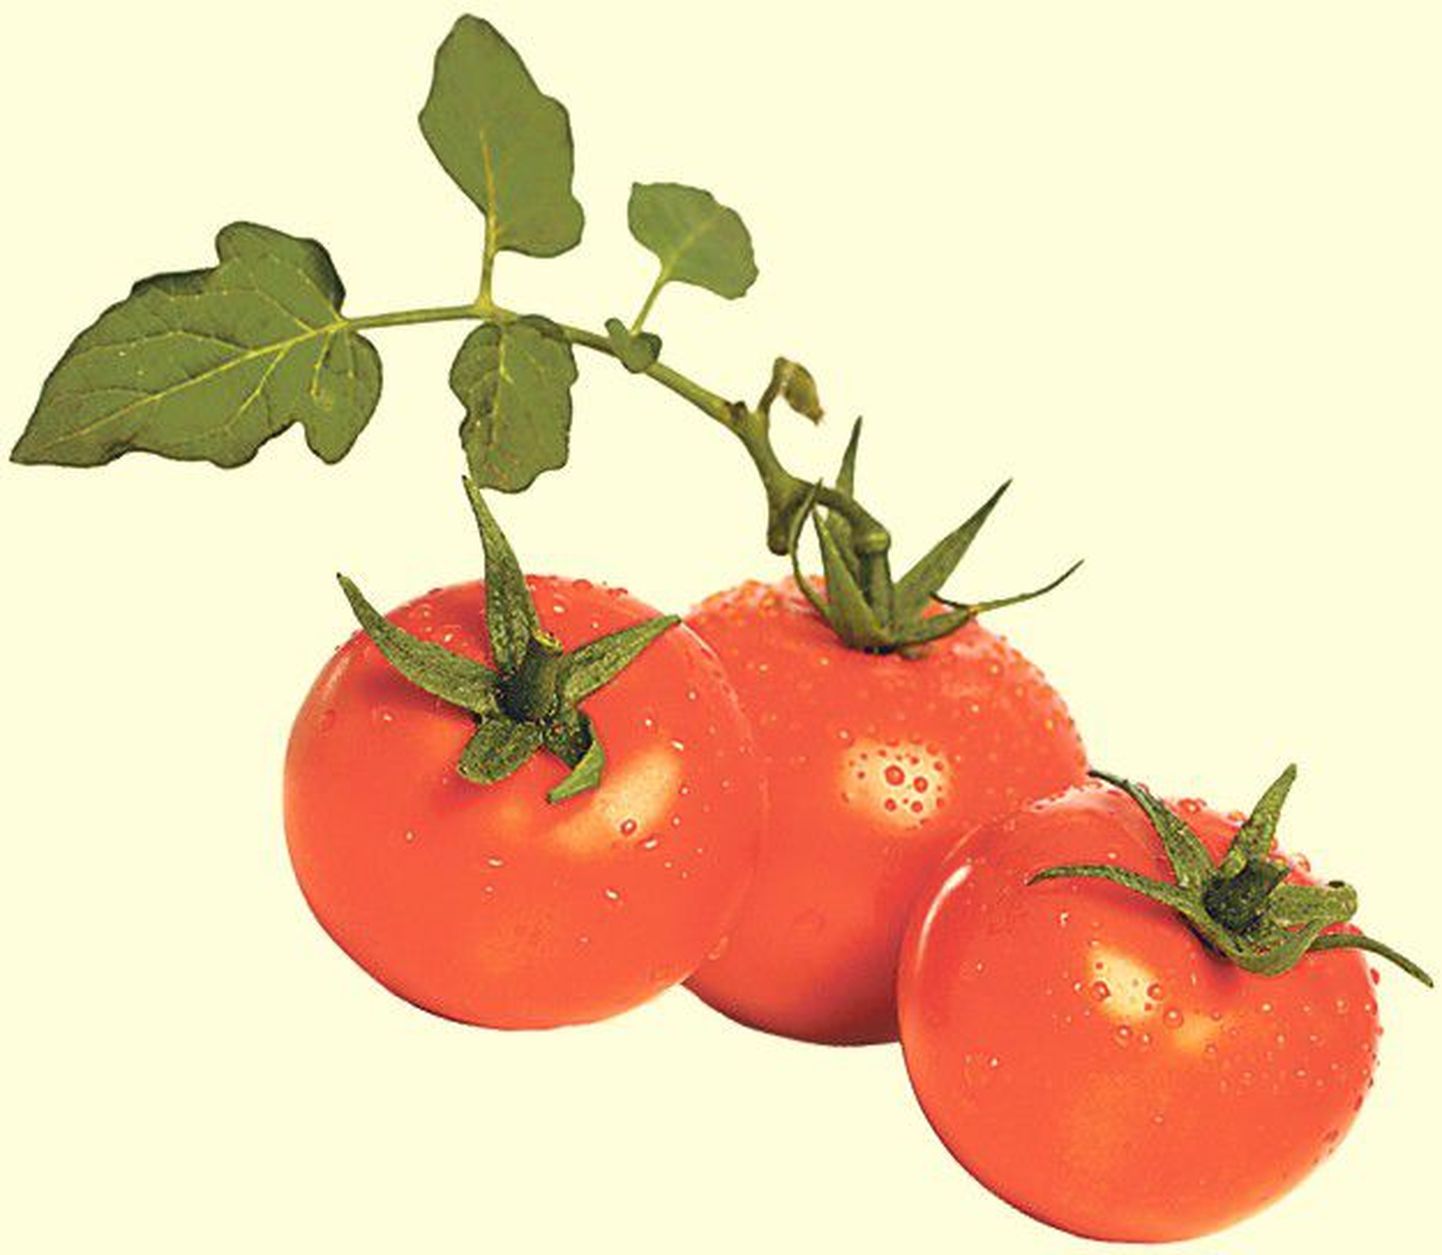 Садовники должны иметь в виду, чем меньше приходится выносить помидорам низкие температуры, тем лучше они сохраняются. Для последующего созревания лучшей температурой будут 15-16 градусов тепла.